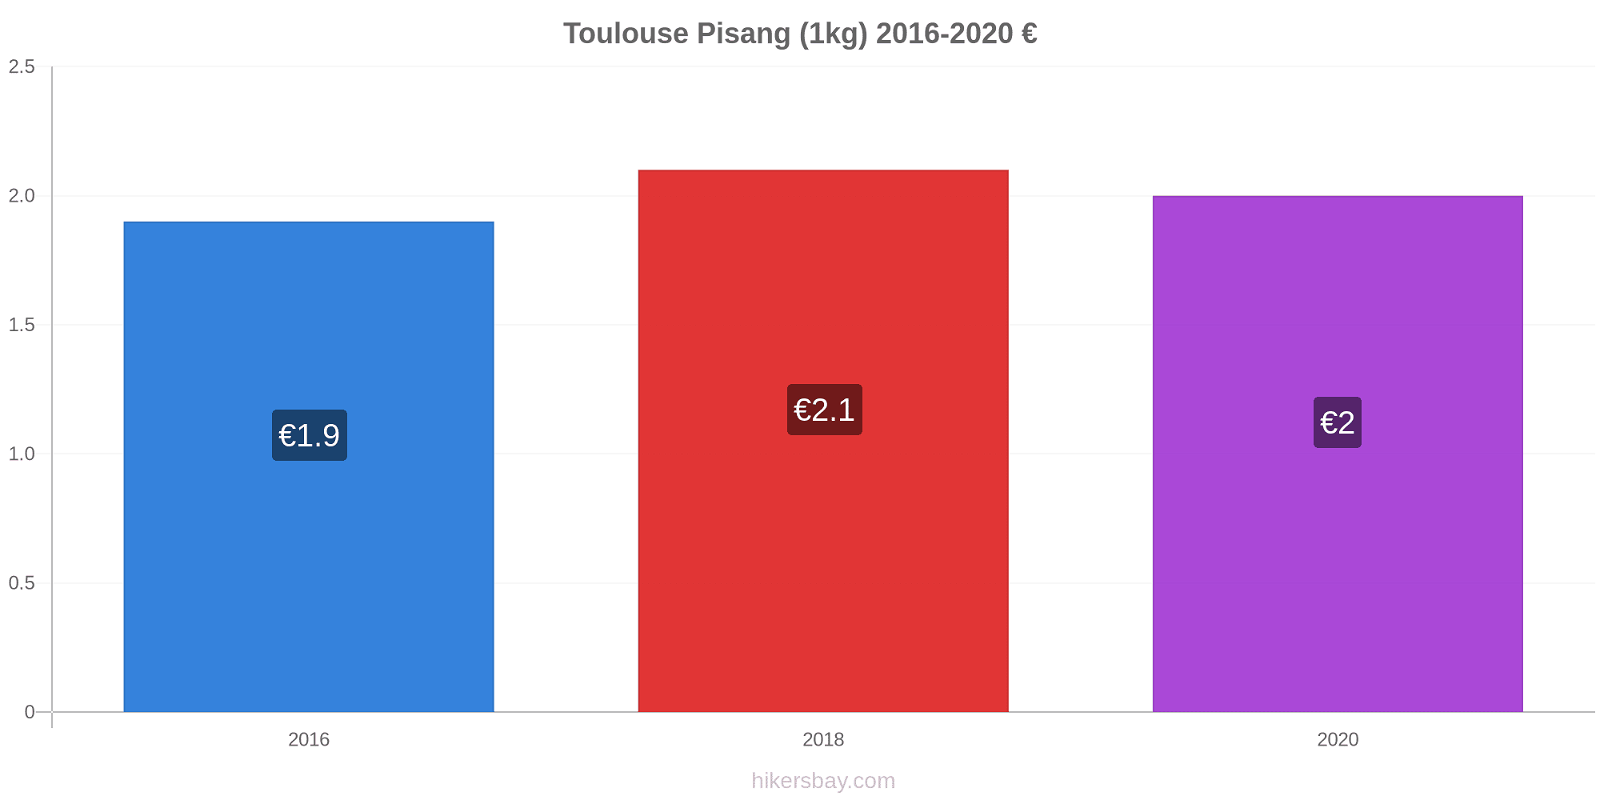 Toulouse perubahan harga Pisang (1kg) hikersbay.com